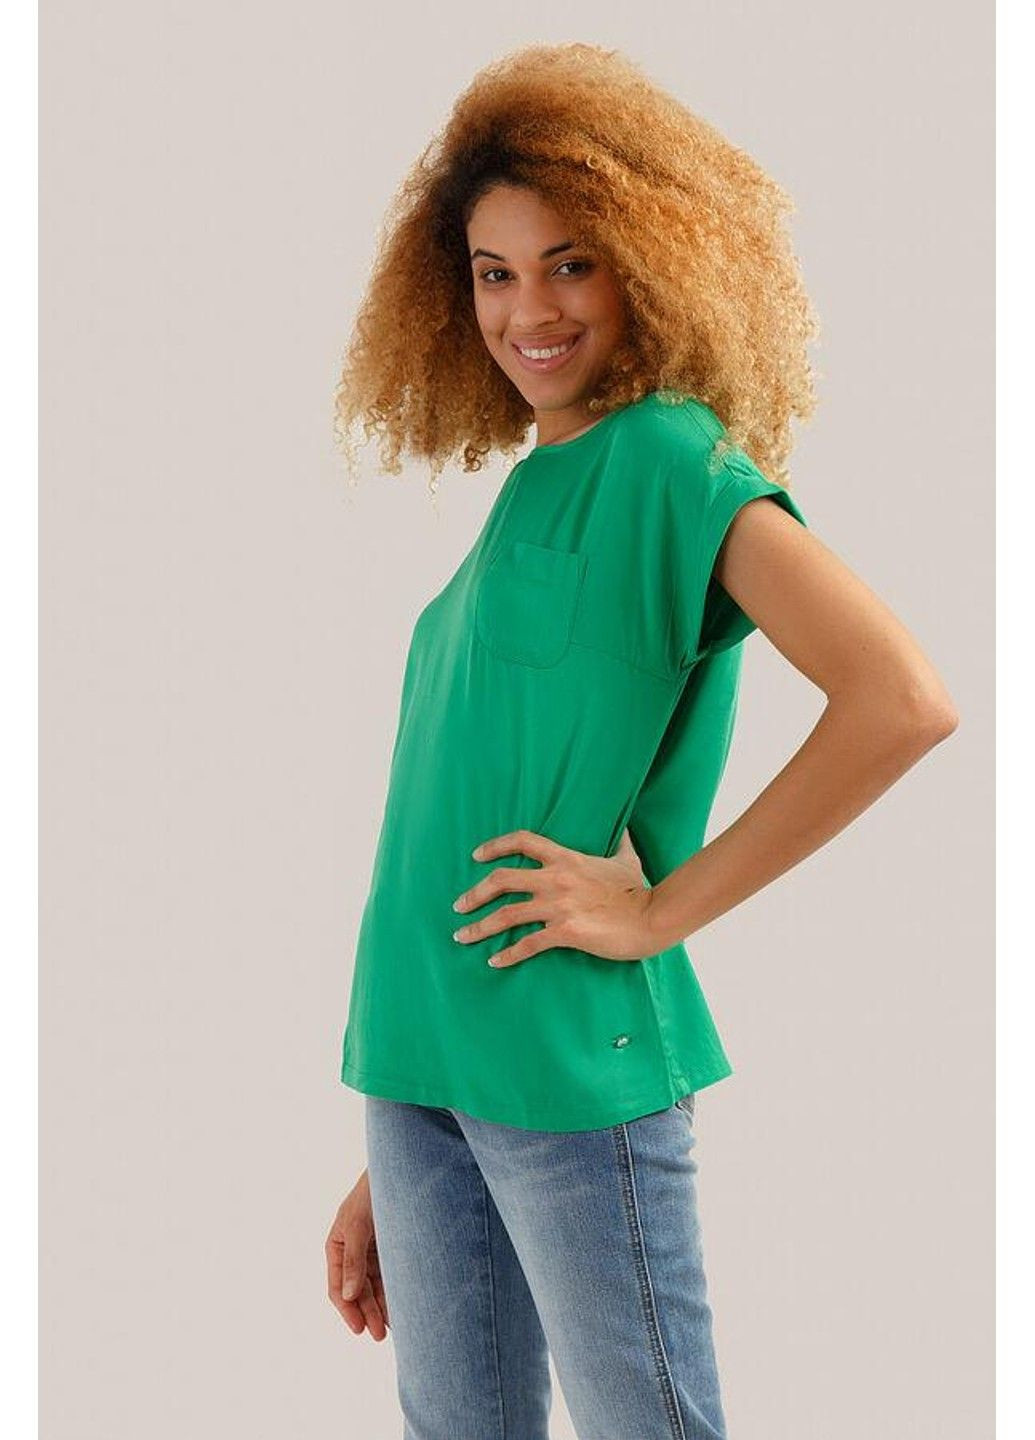 Зеленая летняя блузка s19-14009-500 Finn Flare